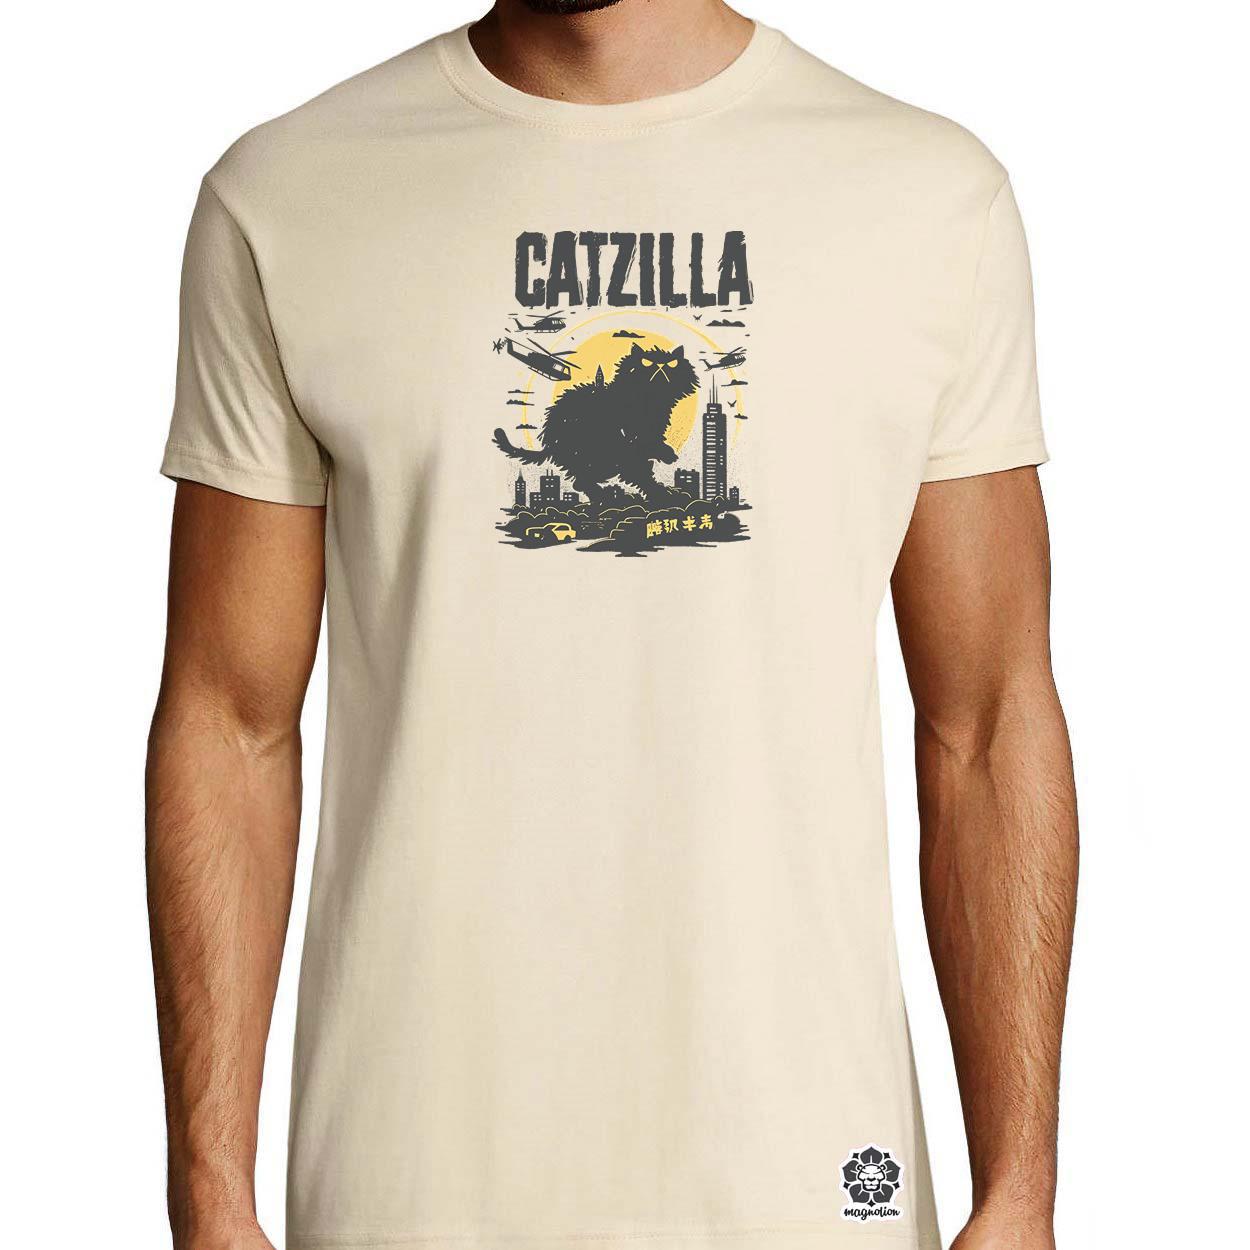 Catzilla v3